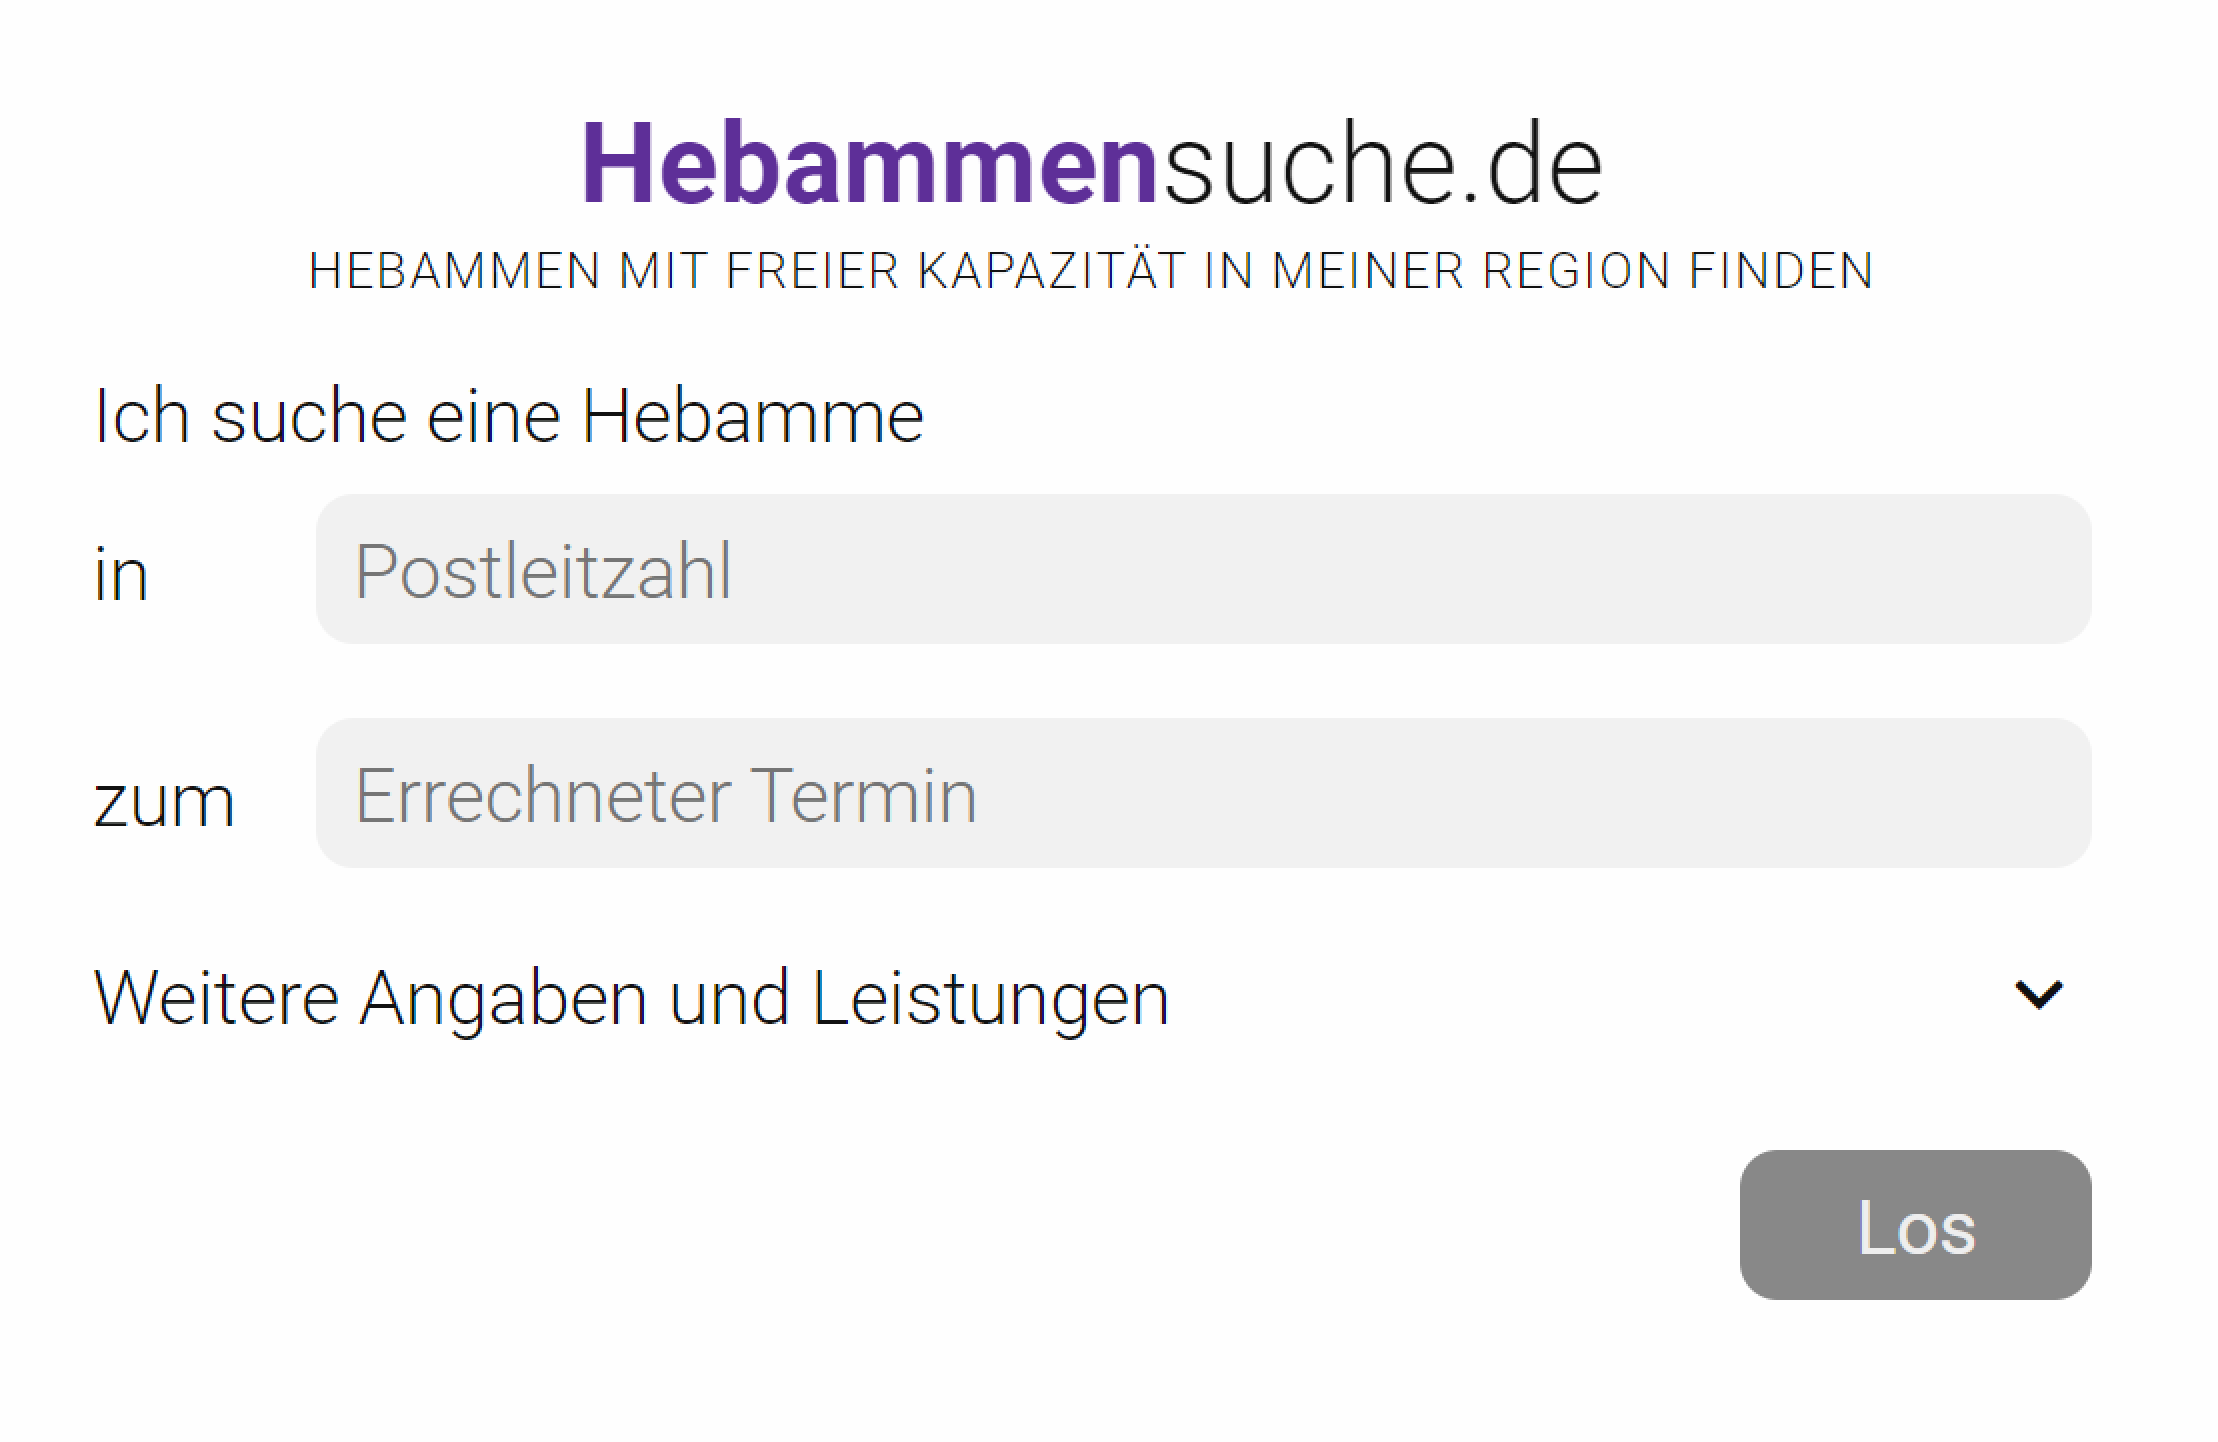 Фильтра на сайте поиска хебамм всего два — почтовый индекс и плановая дата родов